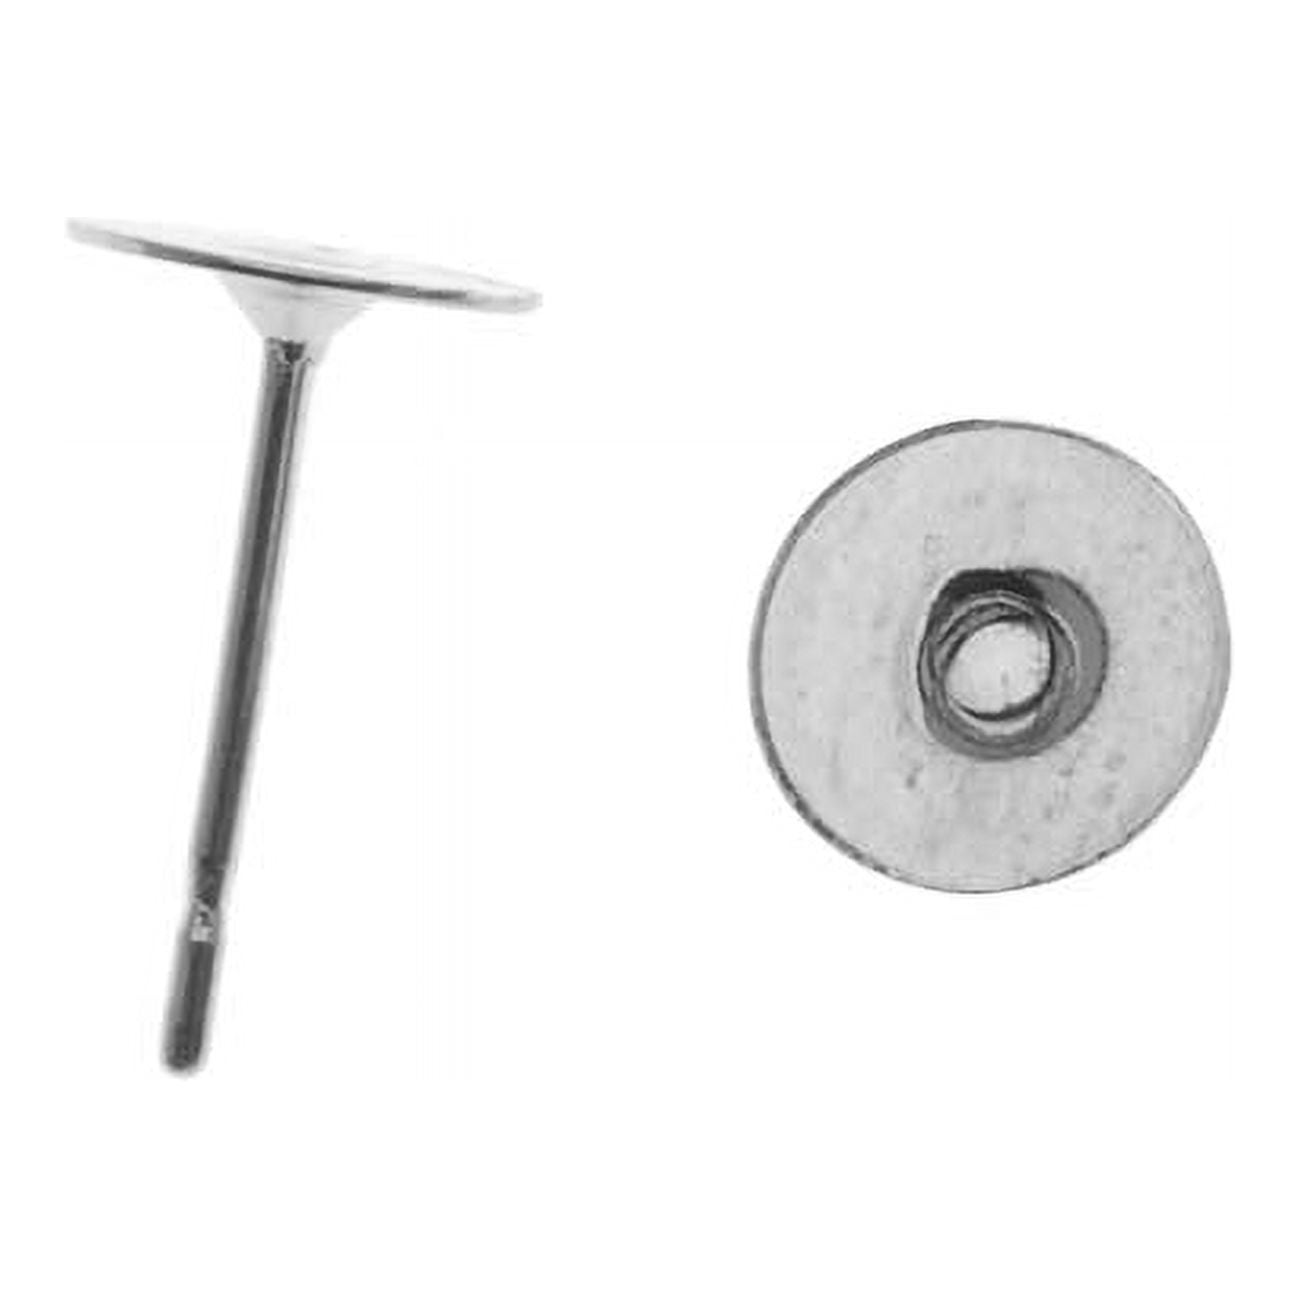 Stainless Steel, 20 Gauge, 6mm Flat Glue-On Post Earring (1 Pair)